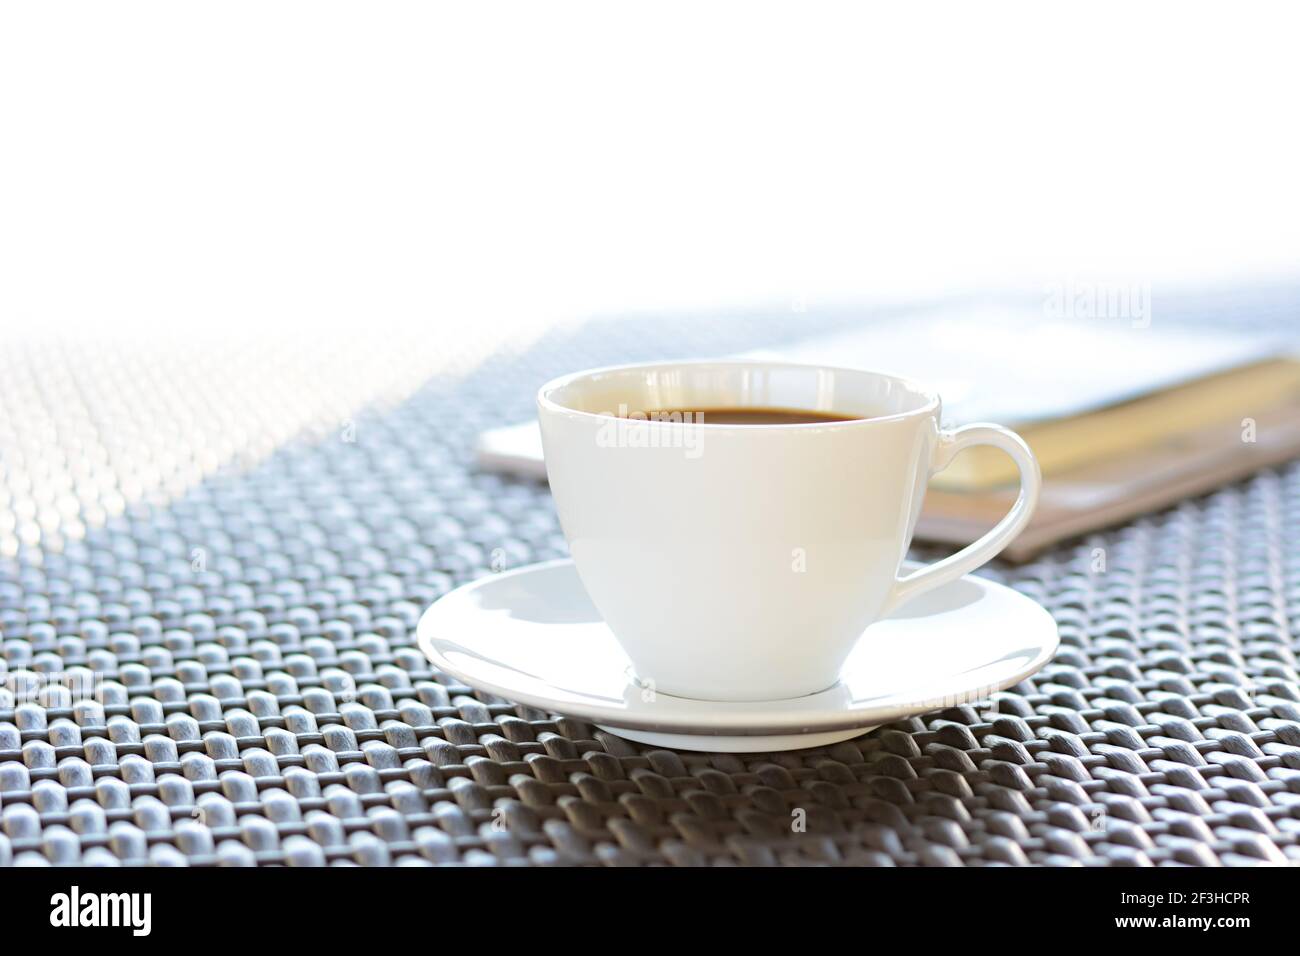 Tazza da caffè con libro sul tavolo marrone in vimini Foto Stock